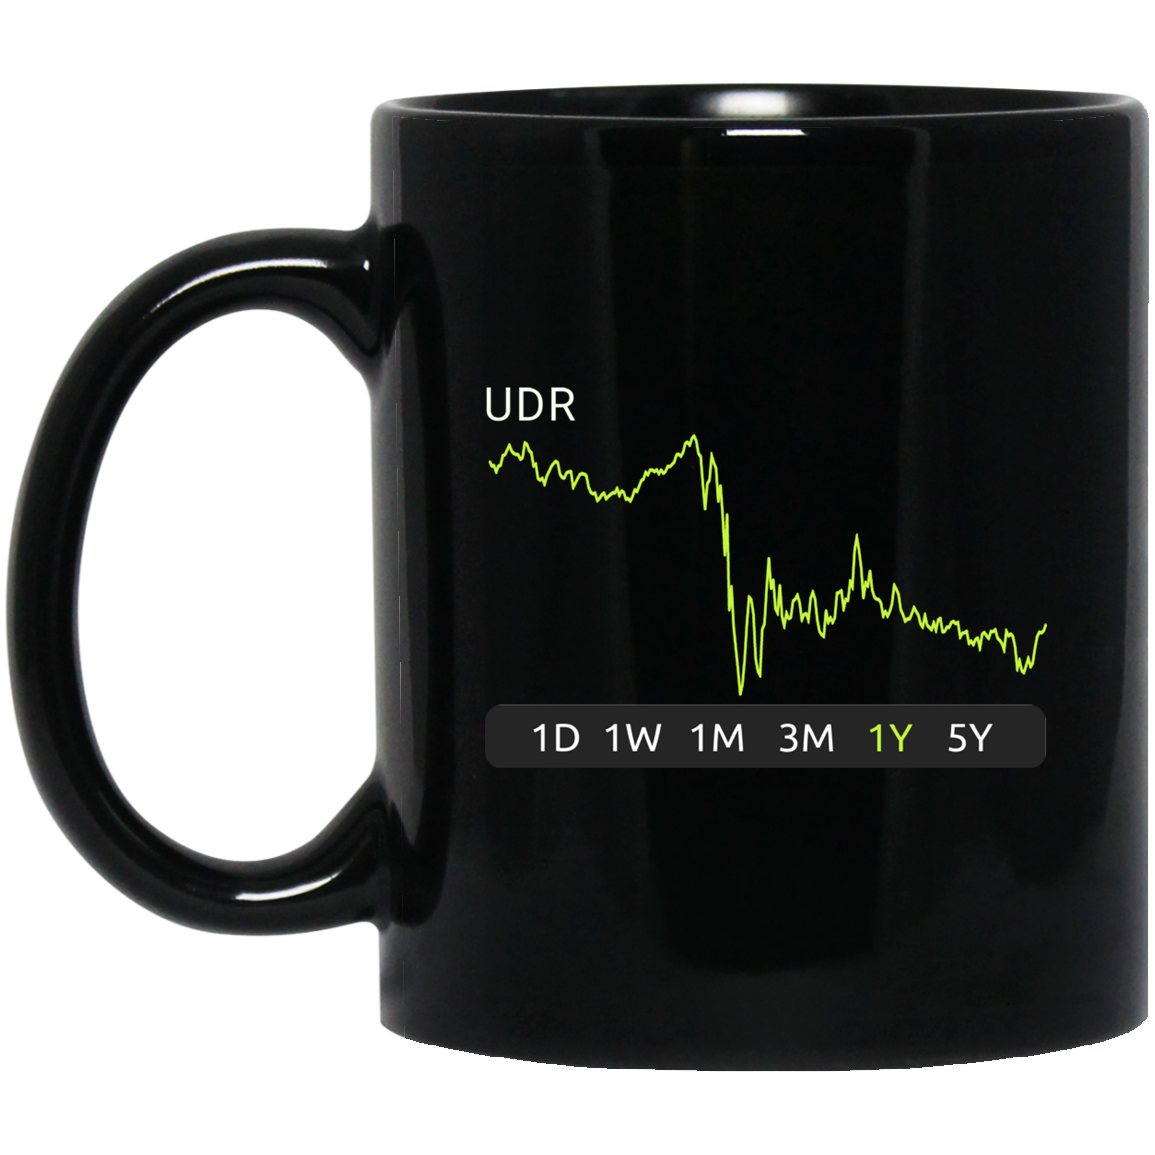 UDR Stock 1y Mug